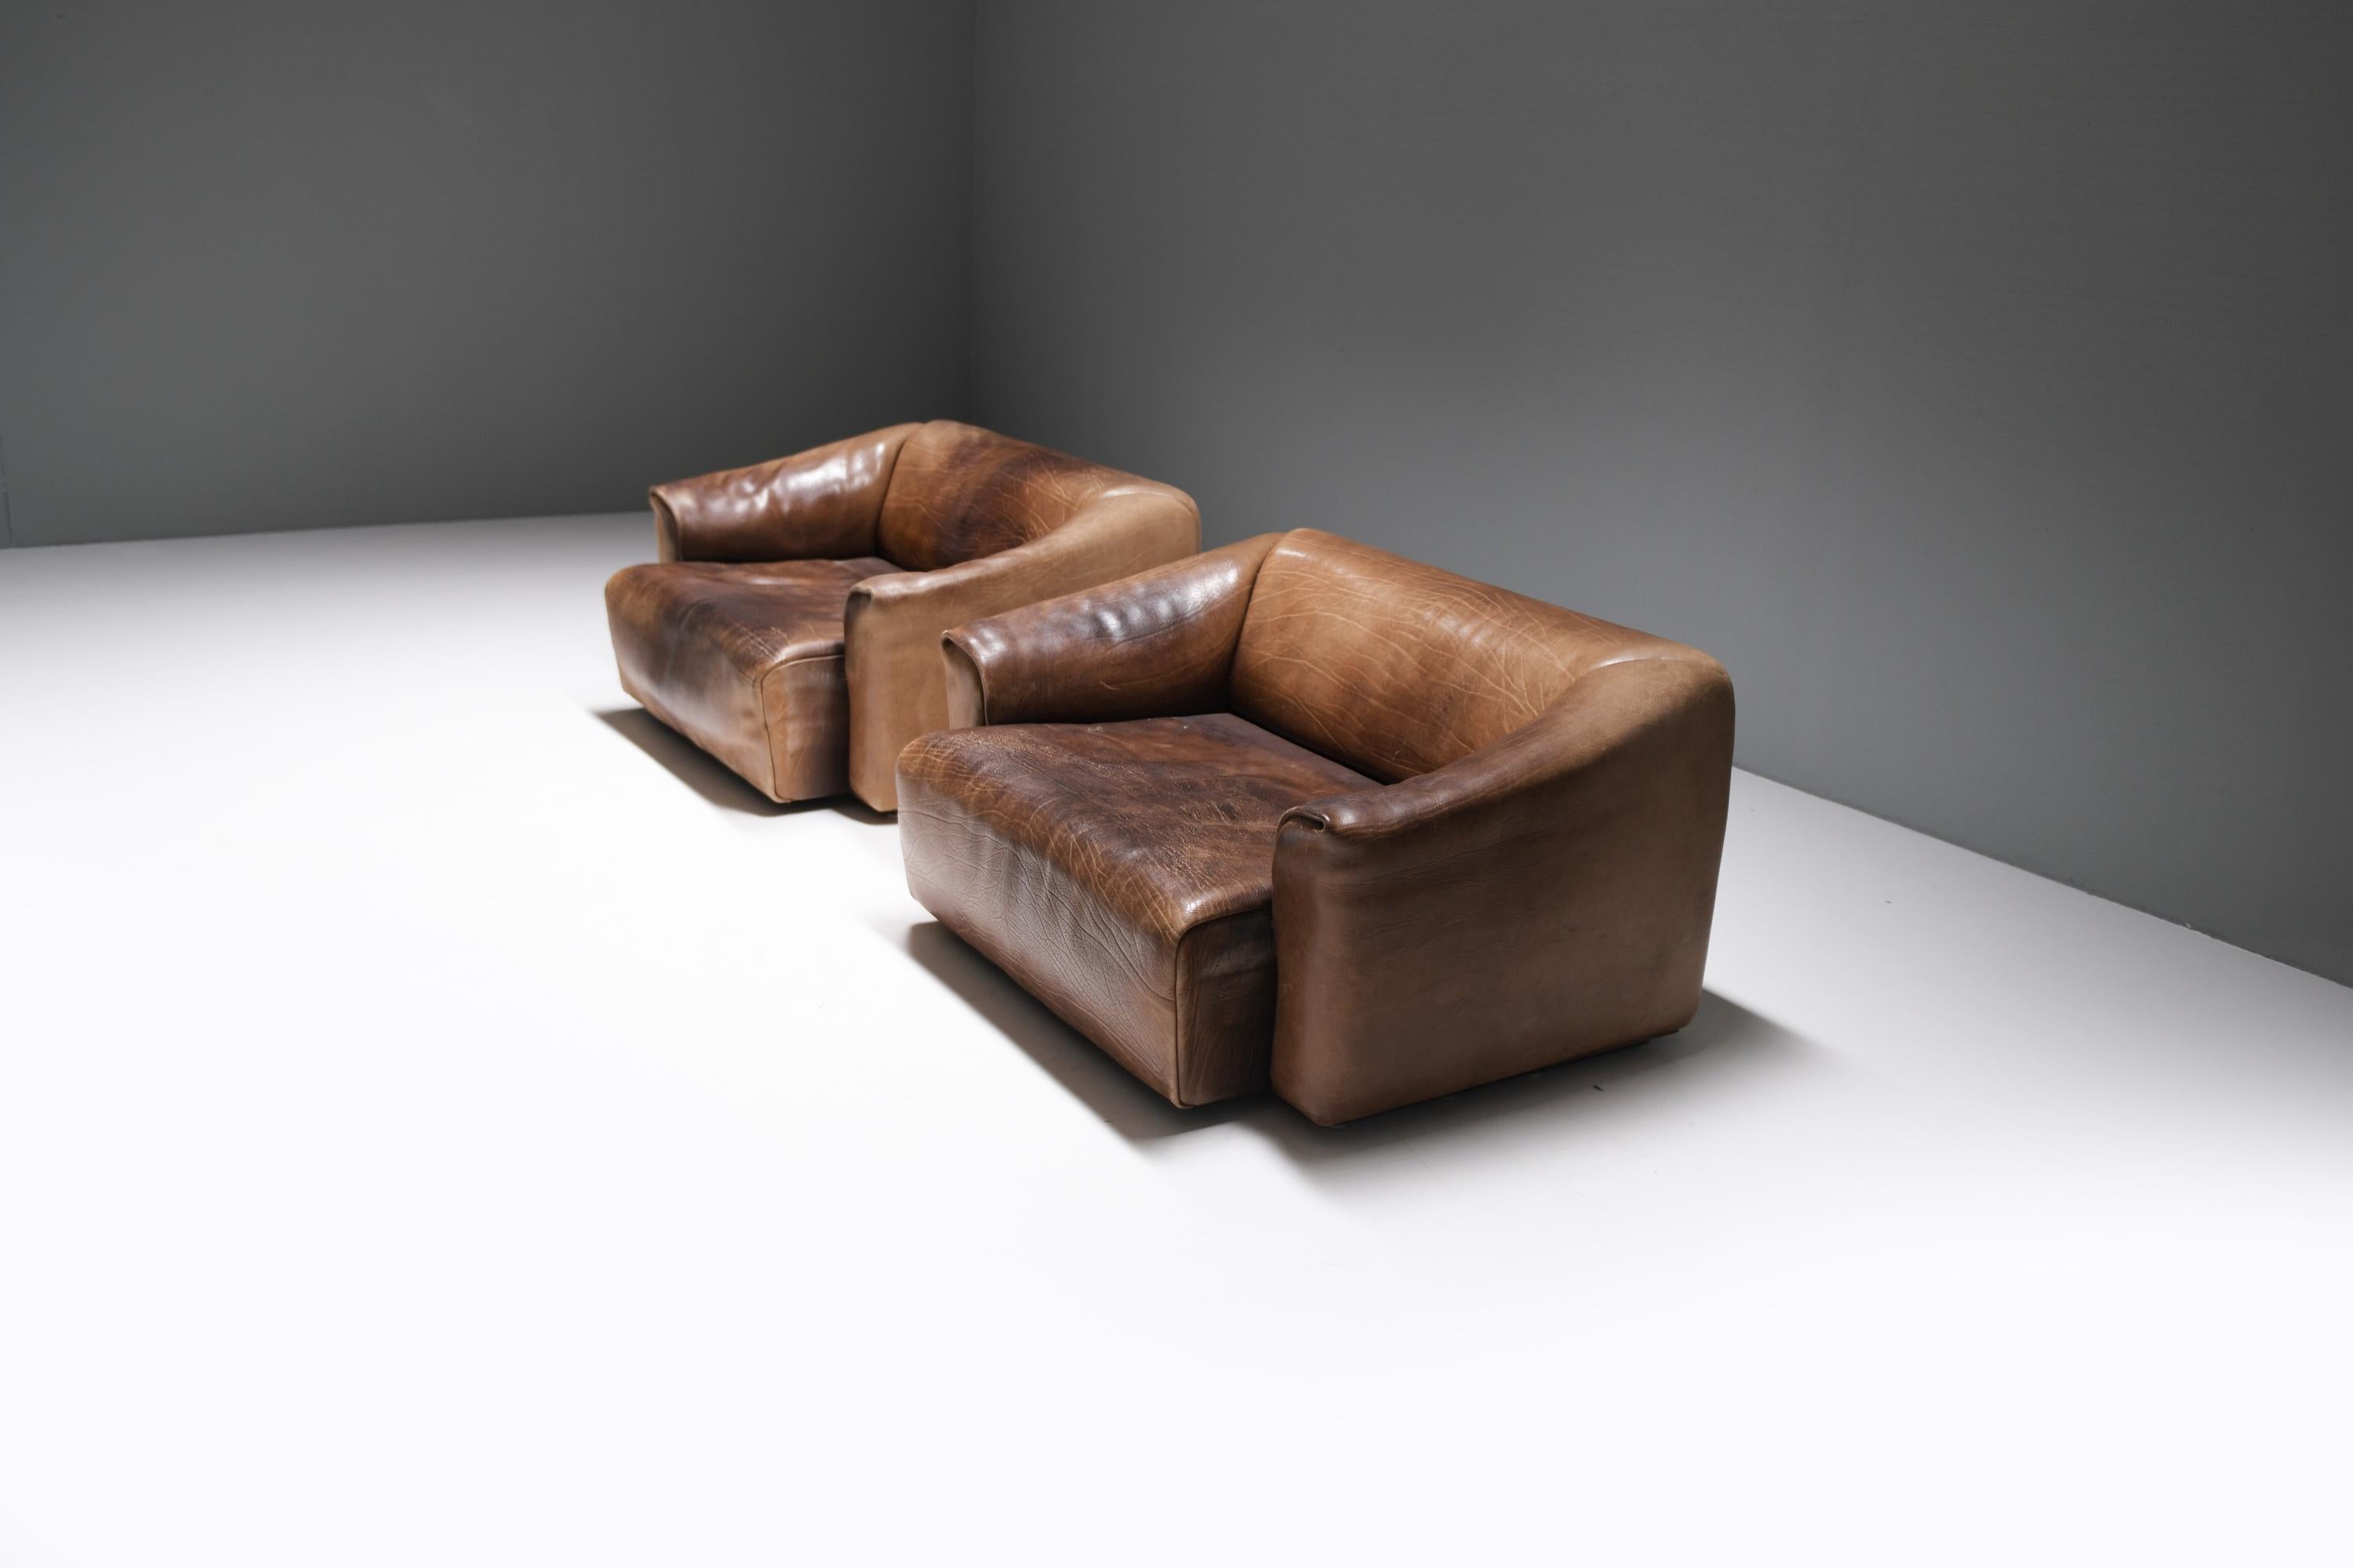 Äußerst bequemes, unverwüstliches DS-47-Sofa in einem wunderschönen, dicken, patinierten Büffelnackenleder.
Entworfen vom Team De Sede für De Sede Swiss.

Einfaches, klares und modernes Design.  Das Sofa befindet sich noch in der aktuellen